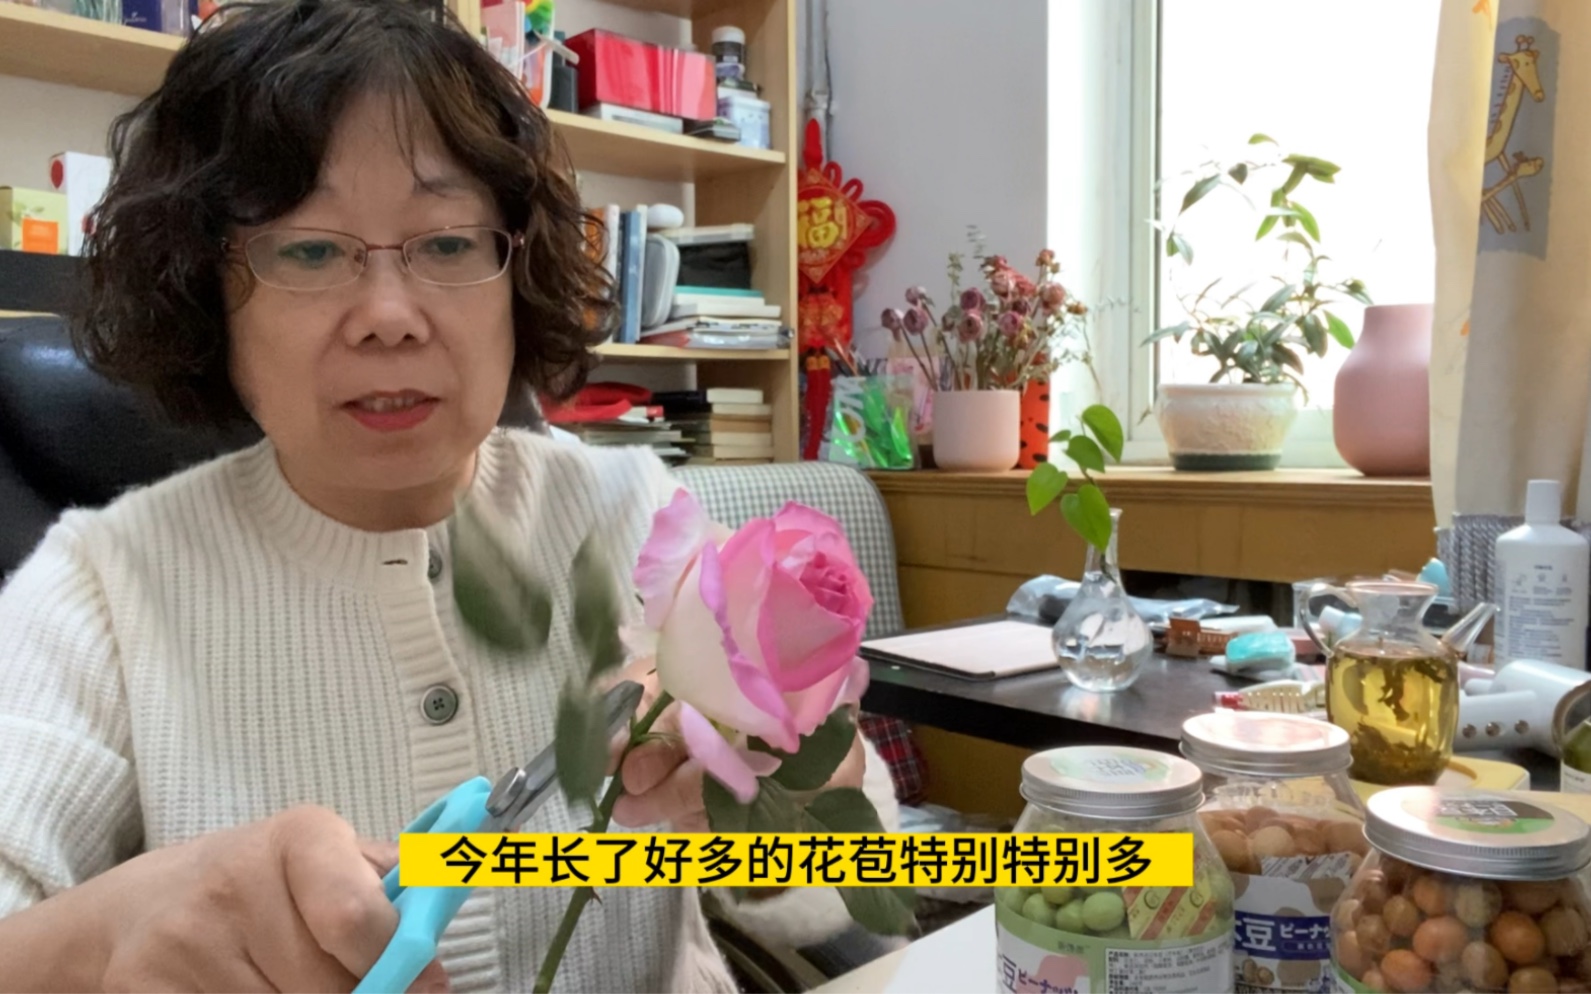 接地气儿的北京退休阿姨，享受生活，分享好物